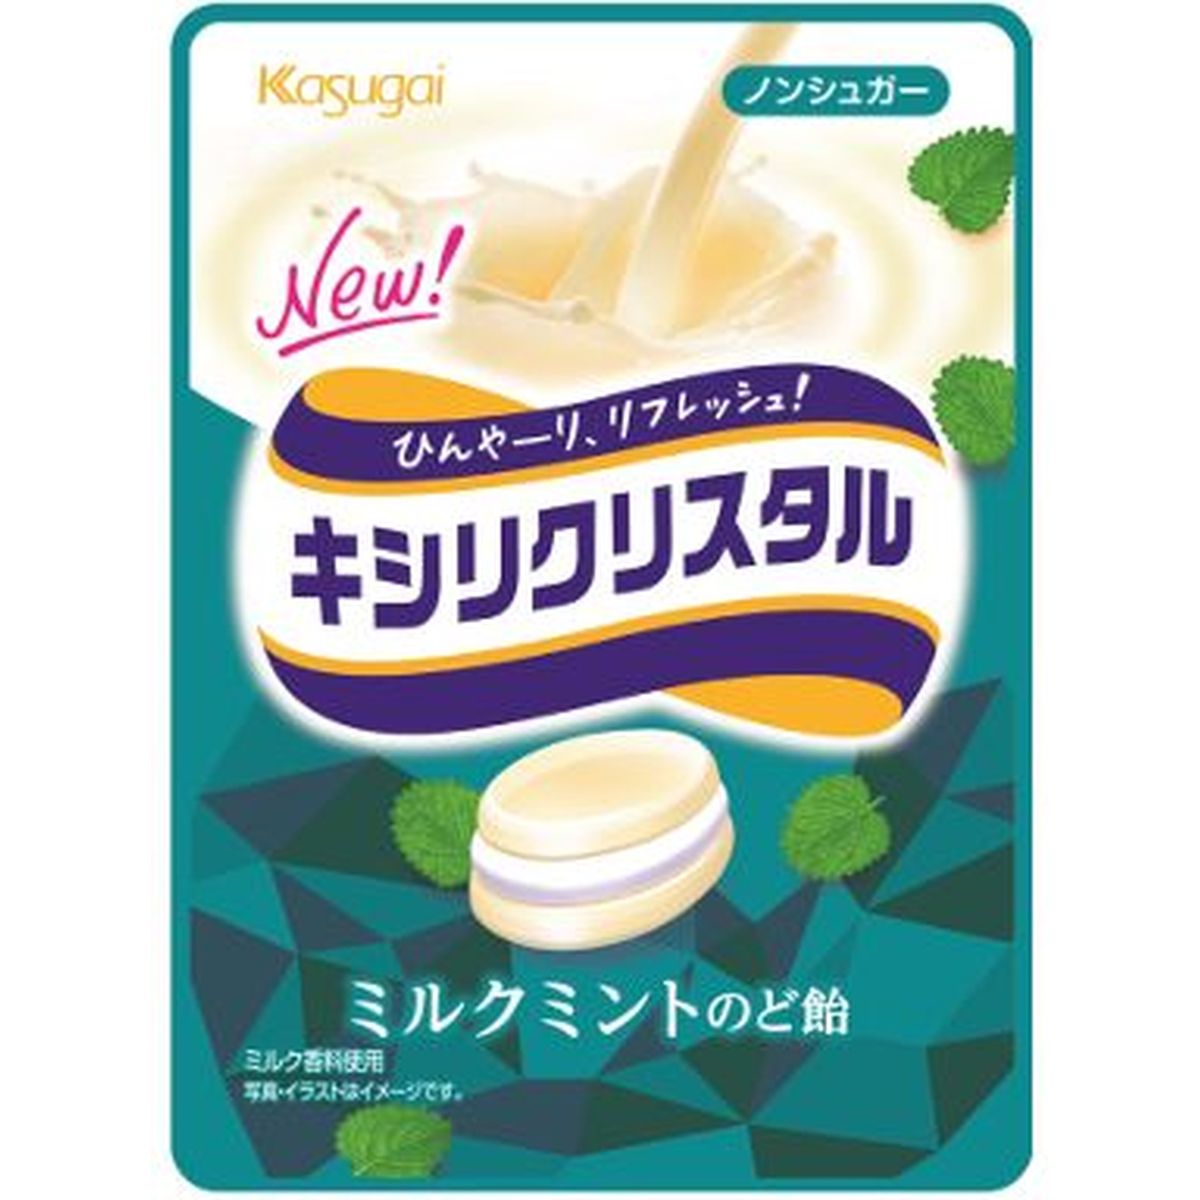 【9個入リ】春日井 キシリクリスタルミルクミントノド飴 33g